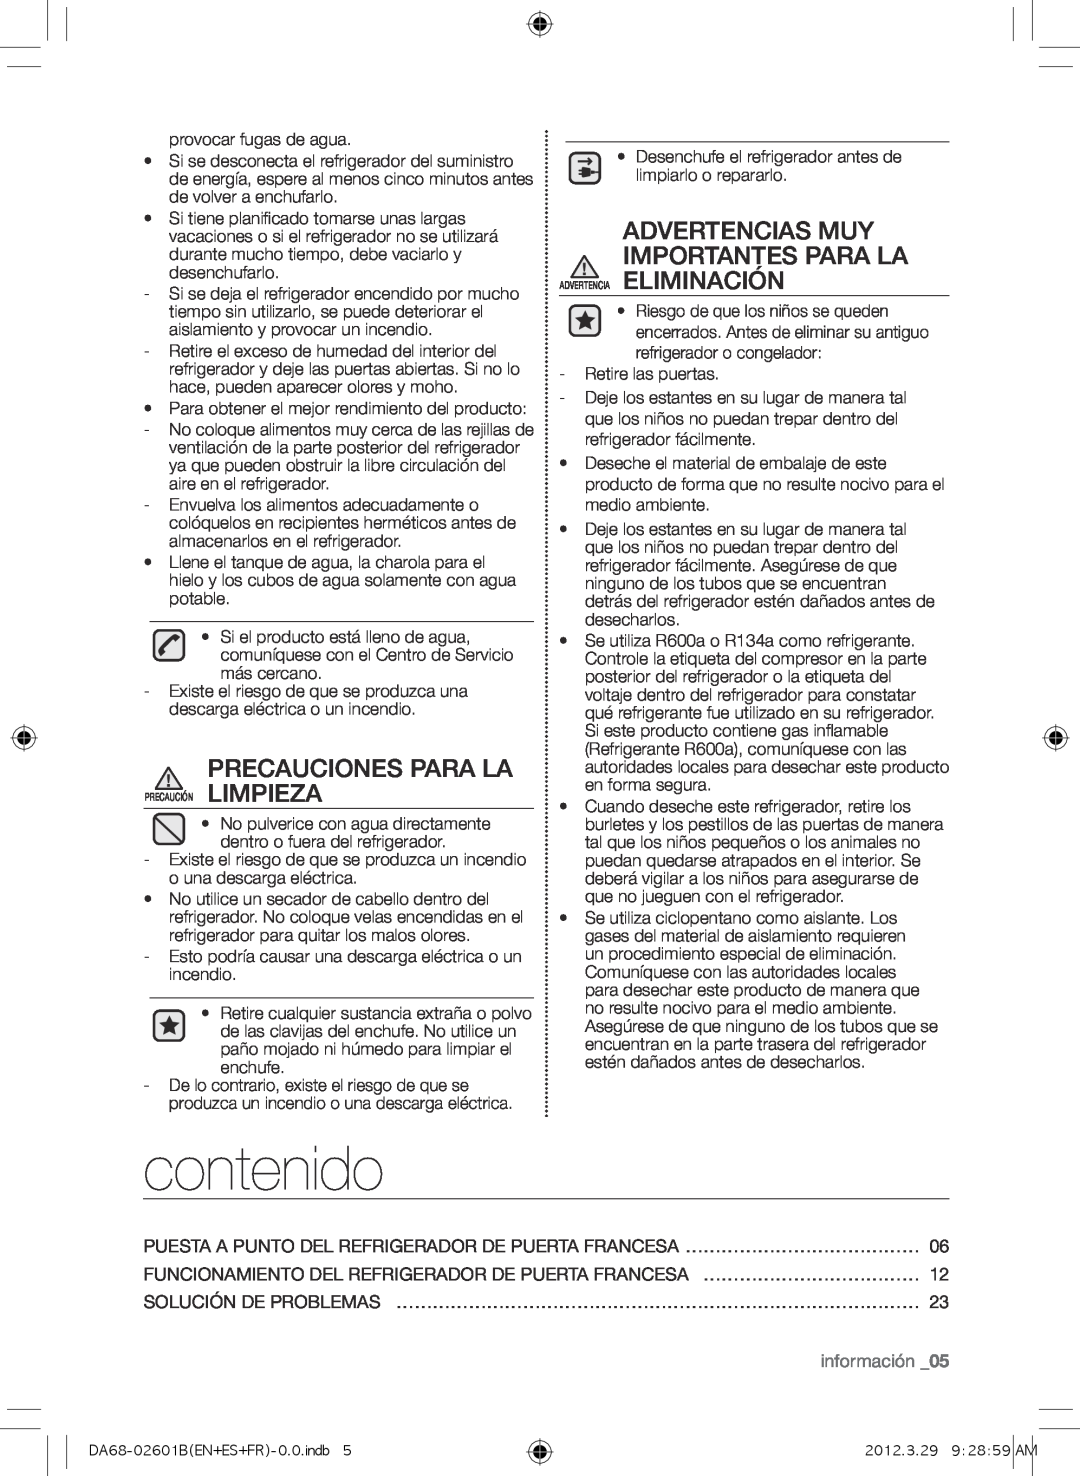 Samsung RF260BEAESP, GI6FARXXQ contenido, Precauciones Para La, Advertencias Muy Importantes Para La, información _05 